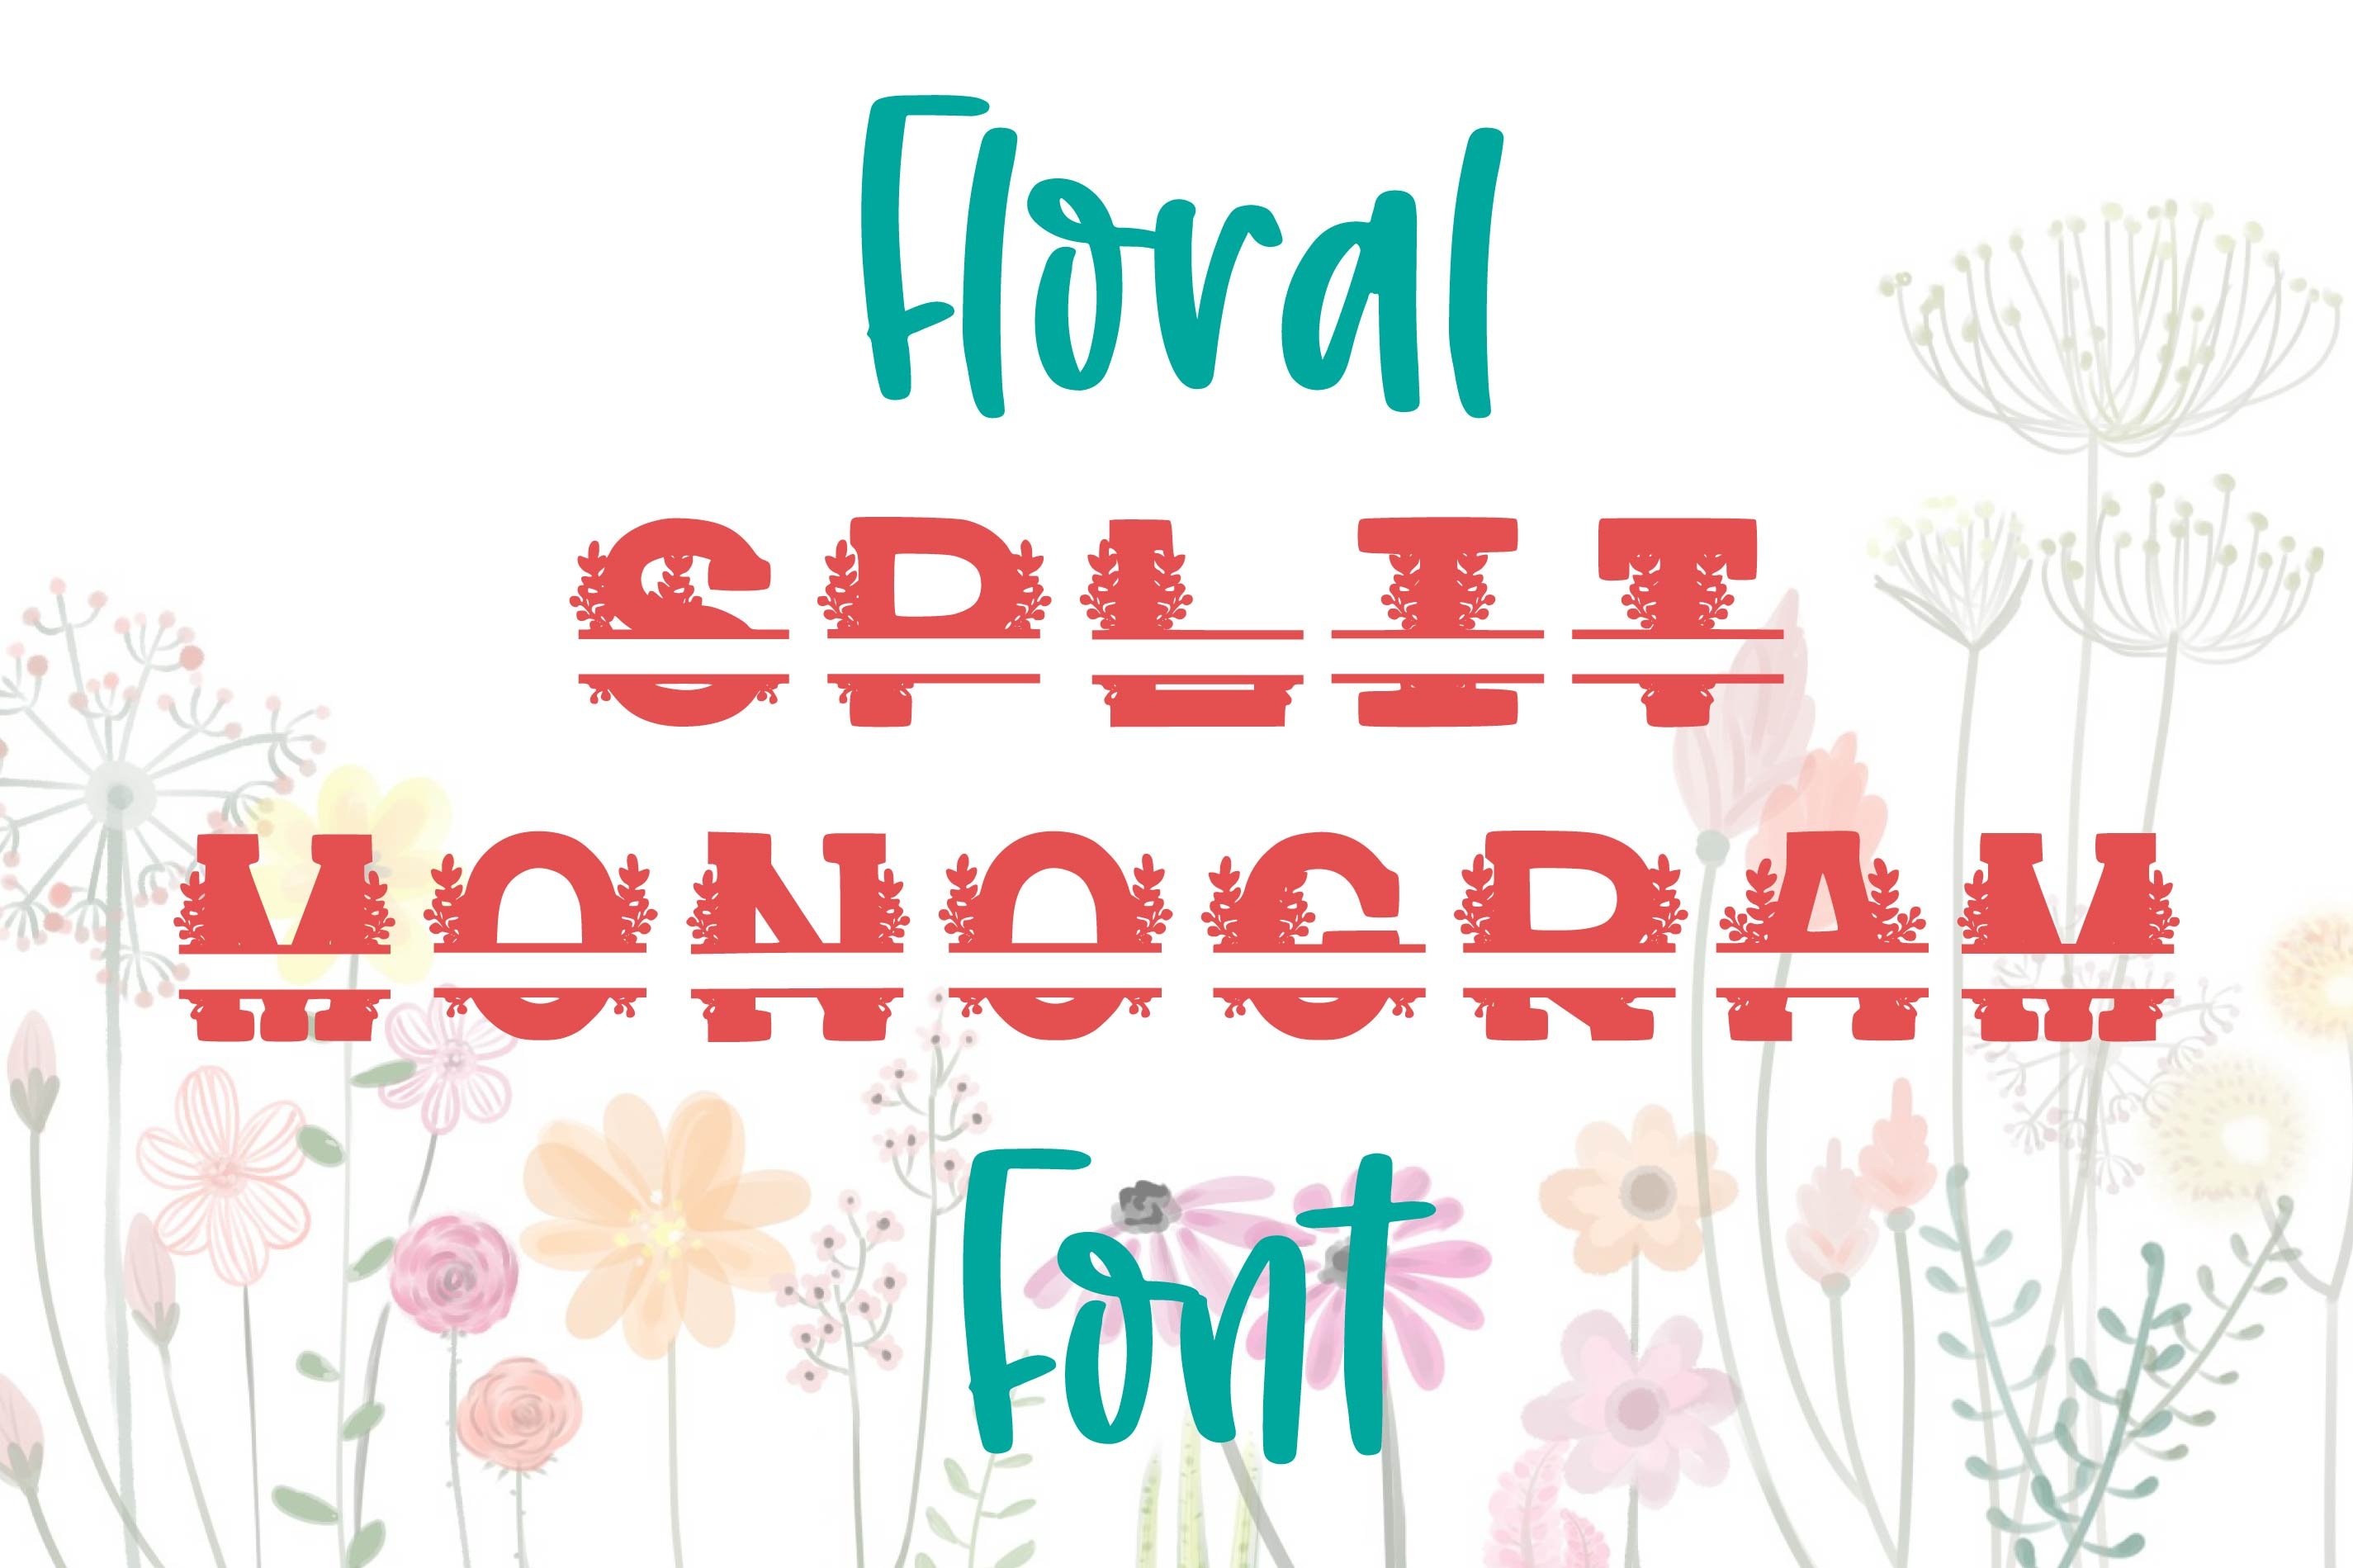 Floral Split Monogram Flower Font cover image.